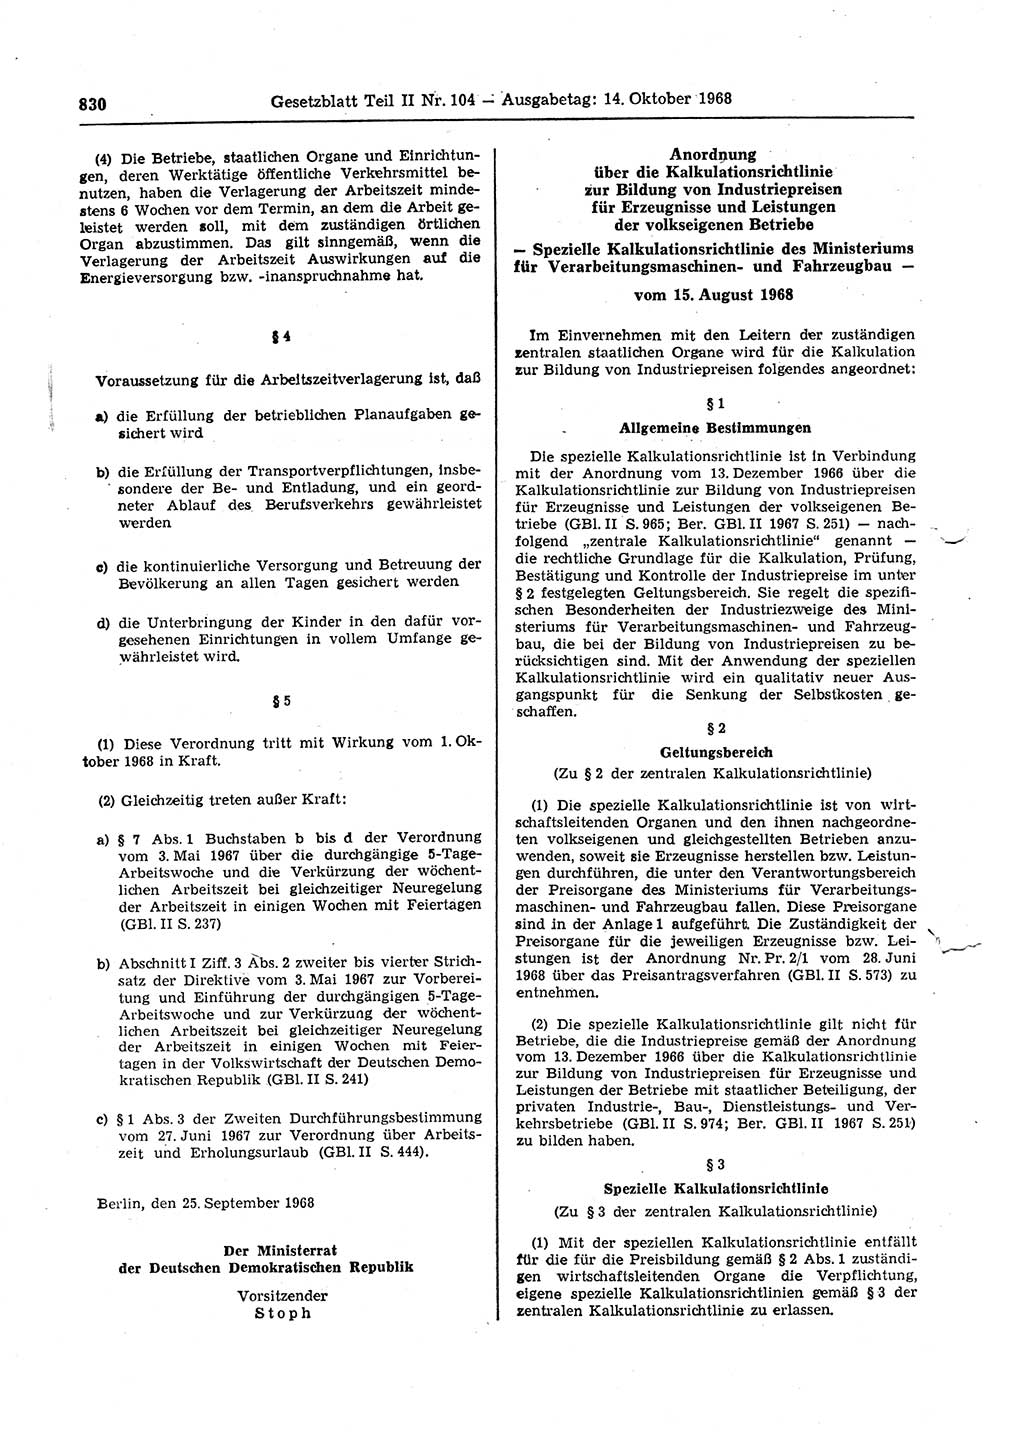 Gesetzblatt (GBl.) der Deutschen Demokratischen Republik (DDR) Teil ⅠⅠ 1968, Seite 830 (GBl. DDR ⅠⅠ 1968, S. 830)